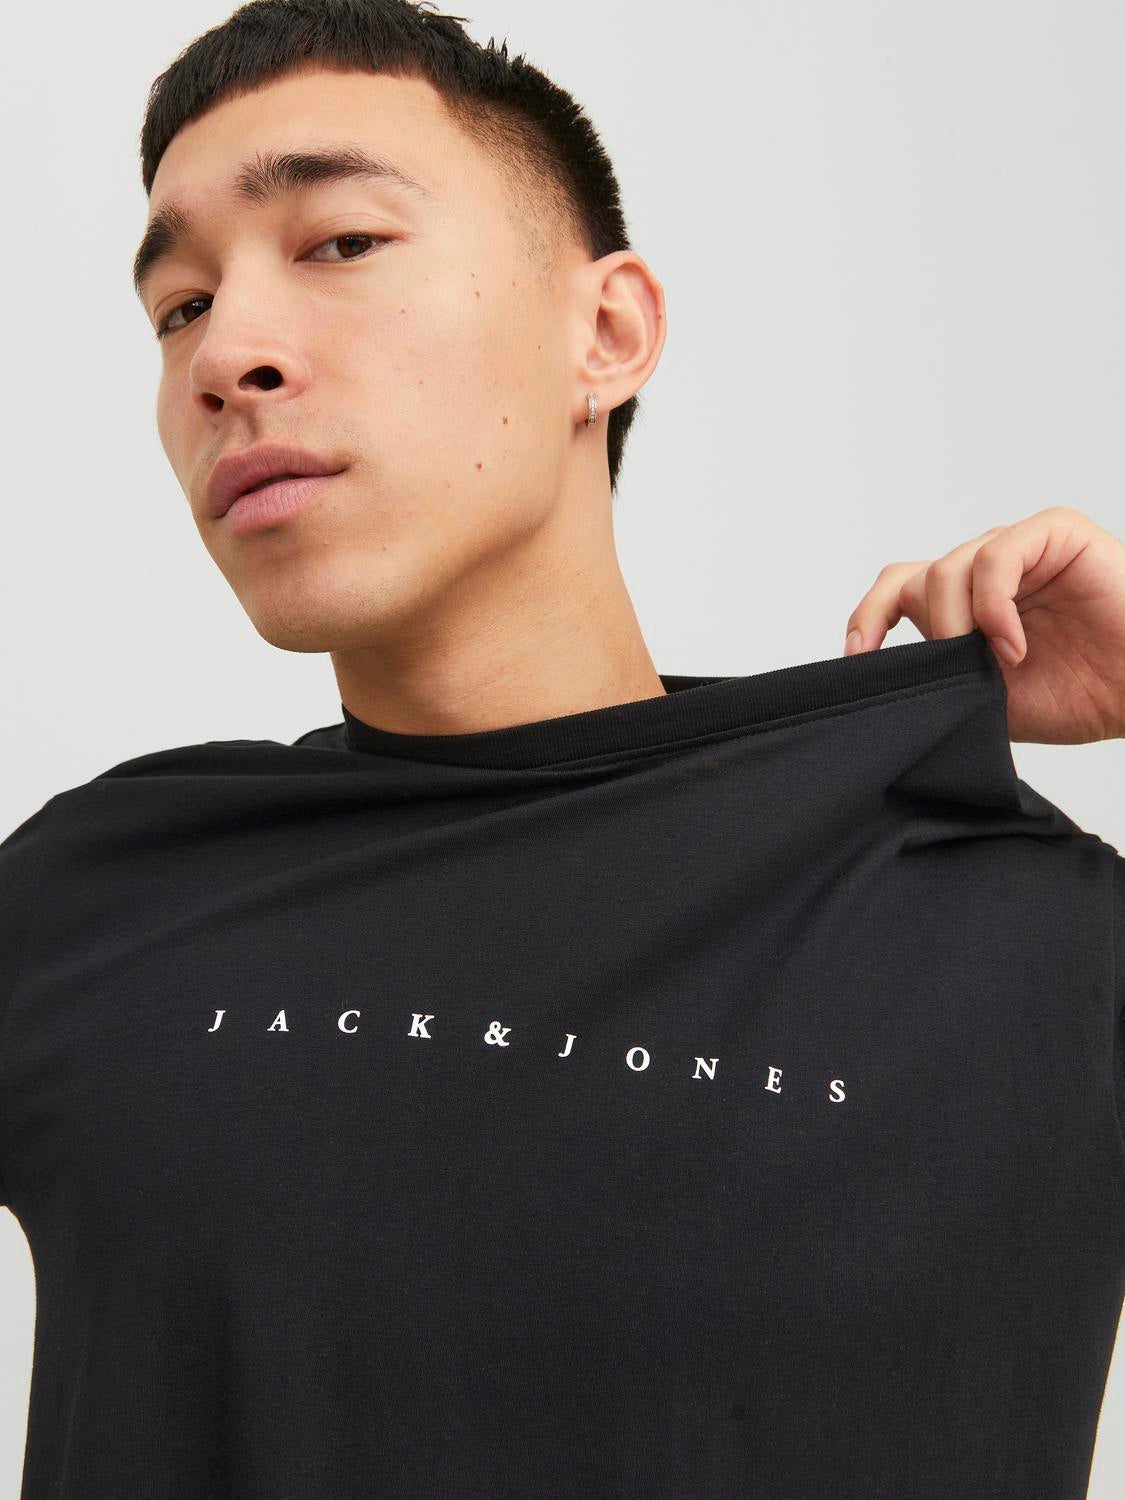 JACK & JONES - T-shirt manches longues - noir Couleur Noir Taille